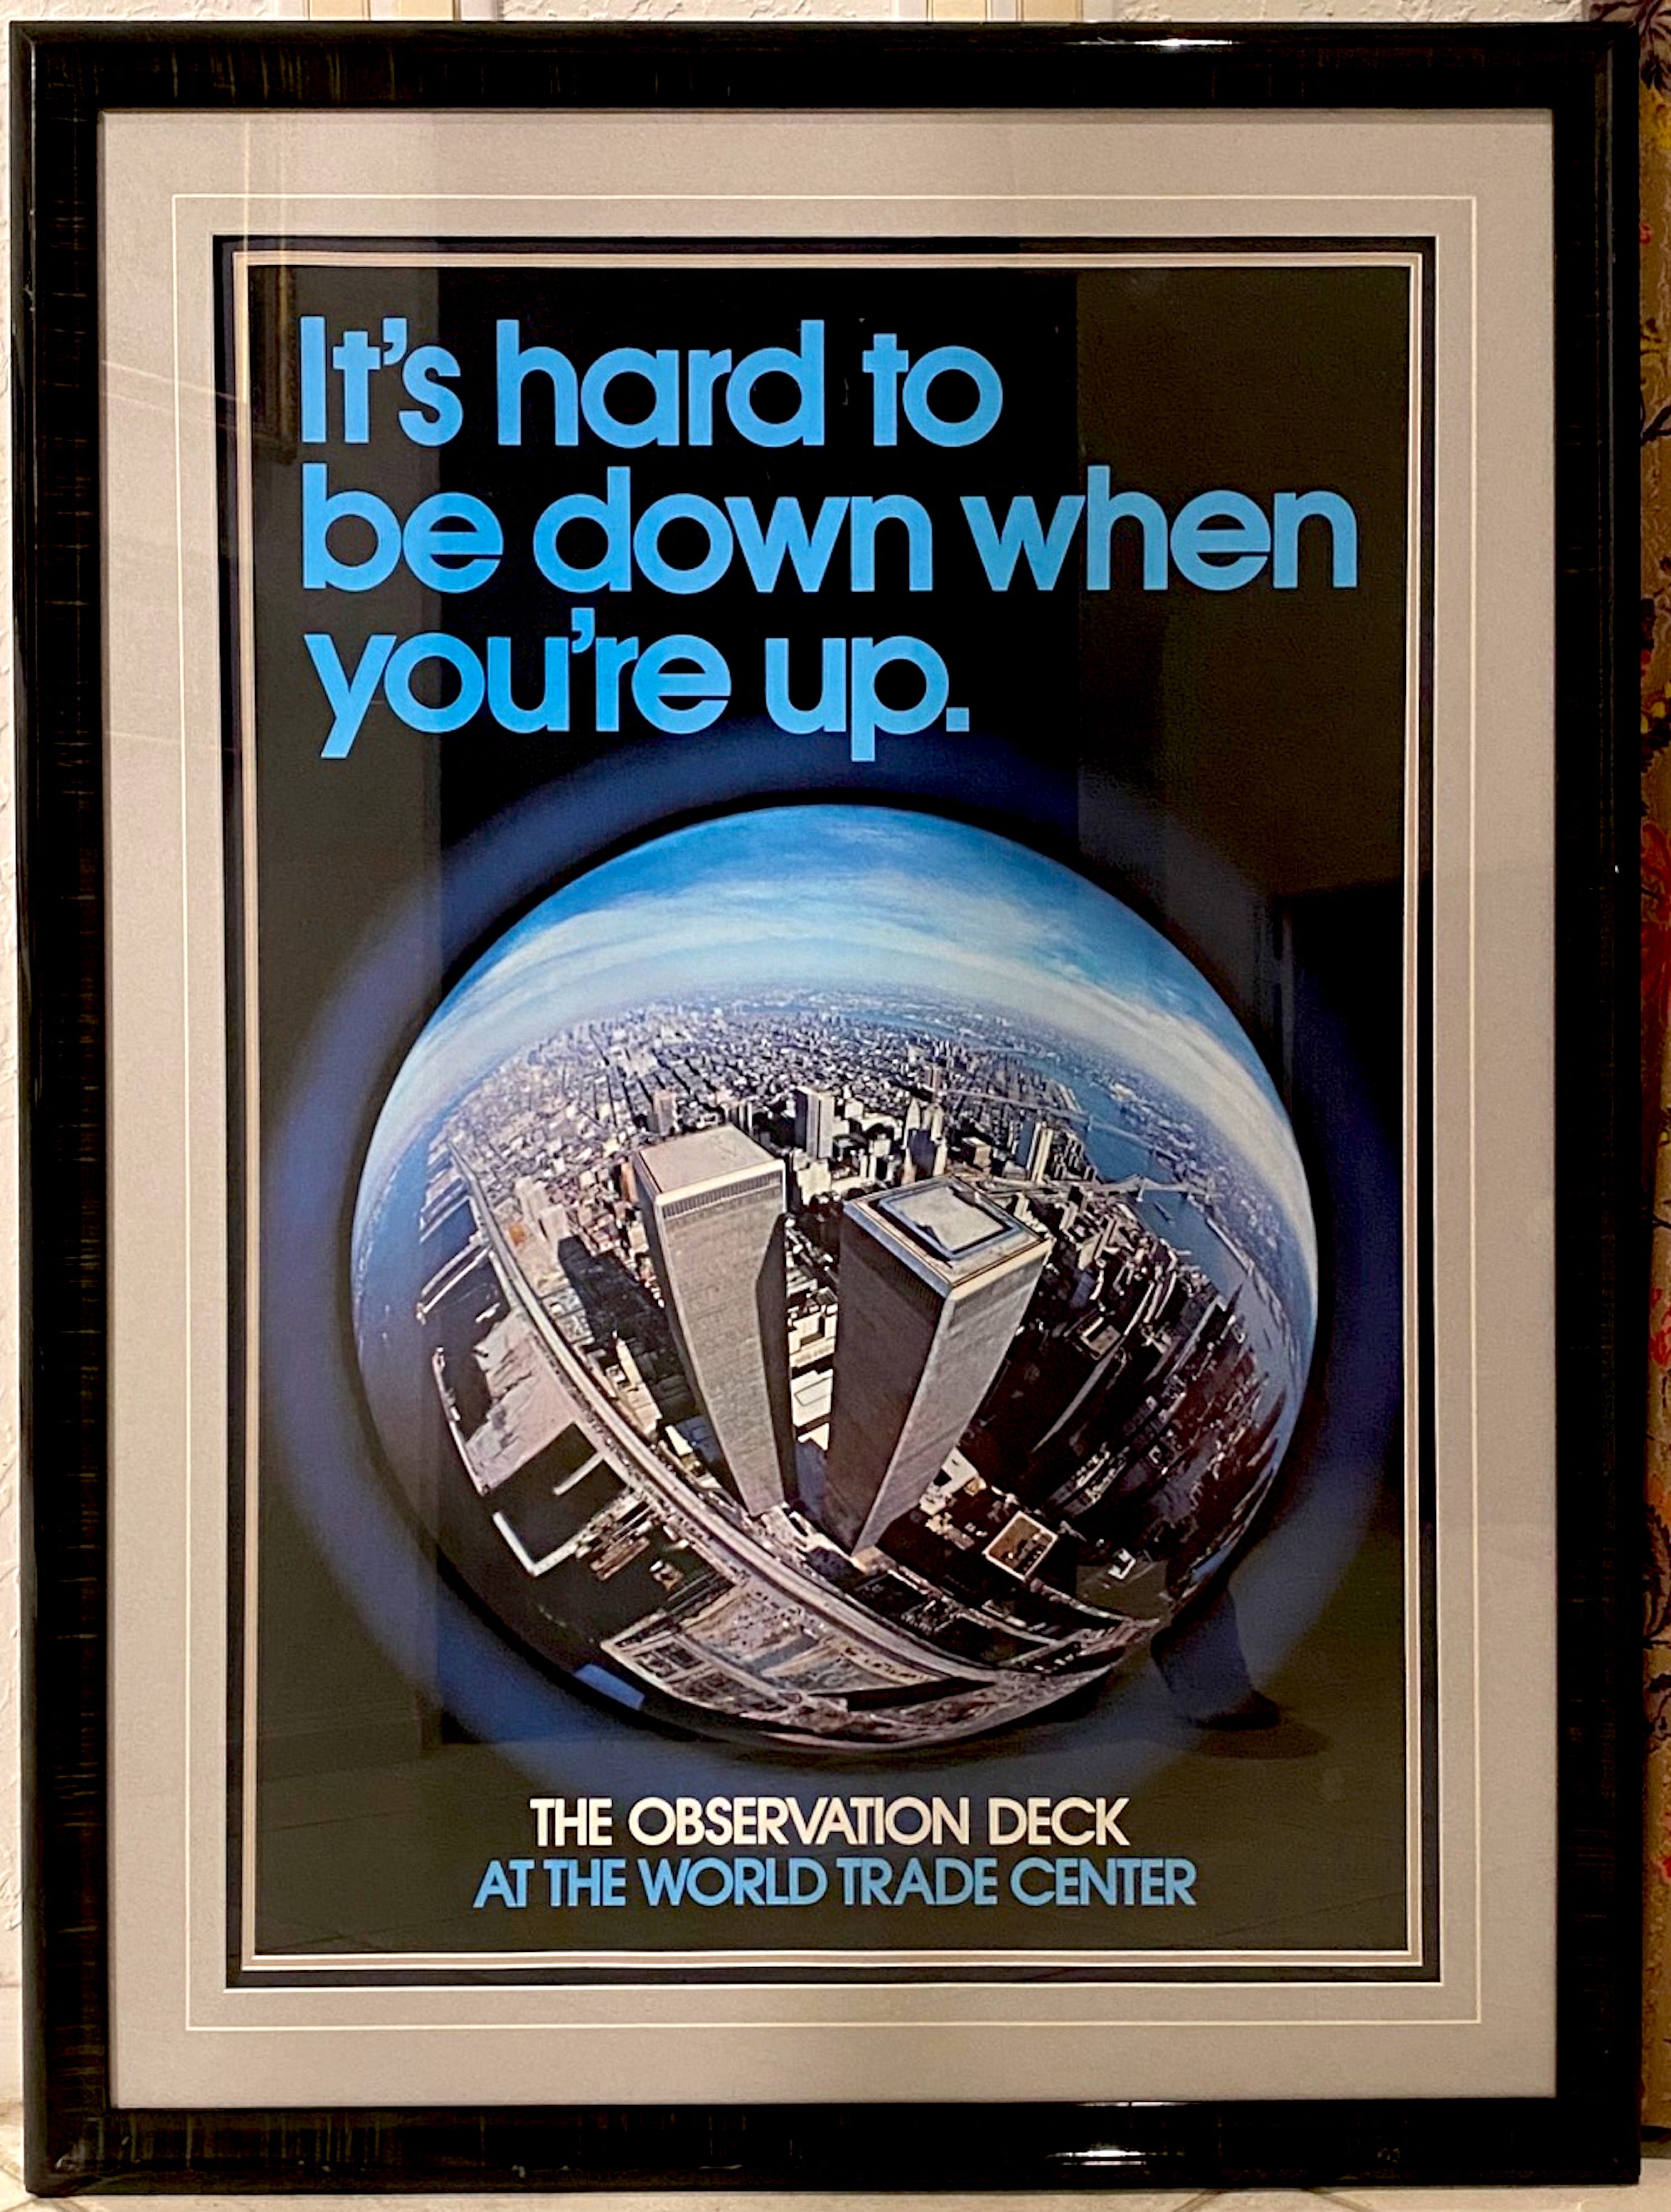 
It's Hard to Be Down When You Are Up, Original New York World Trade Center Poster, um 1970 original gerahmt, in sehr gutem Zustand.
Das Poster misst ungefähr 24' mal 36', die Gesamtgröße mit Rahmen beträgt 32,5